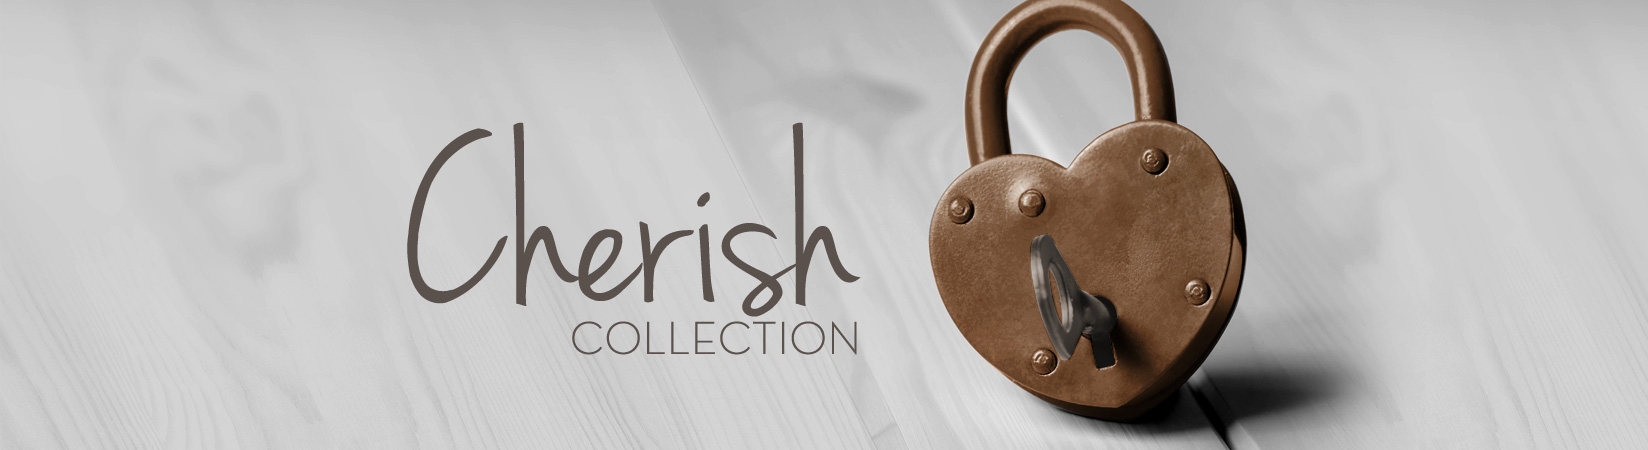 Cherish Collection